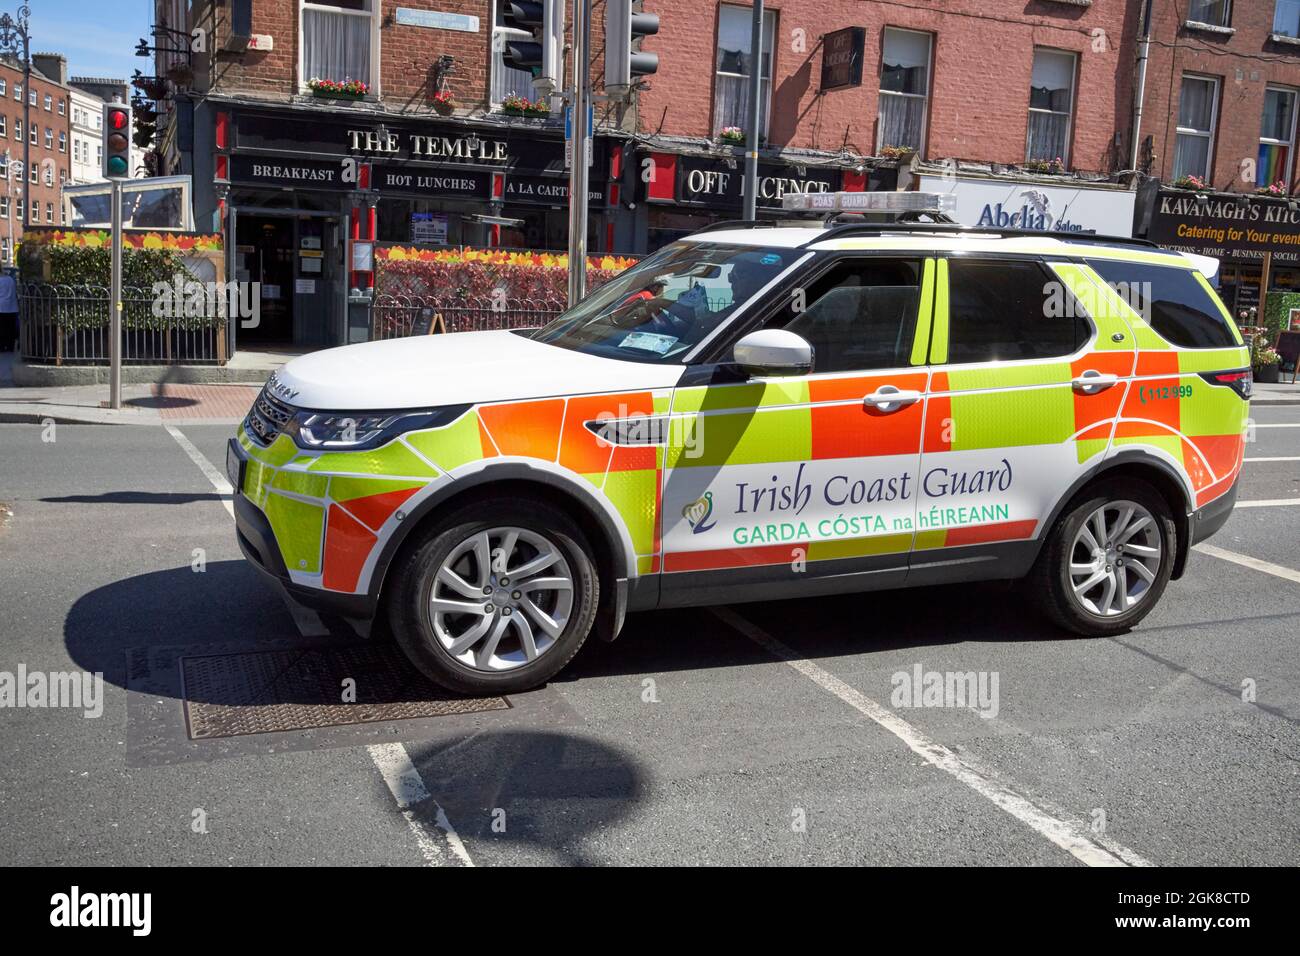 véhicule de la garde côtière irlandaise à dublin, république d'irlande Banque D'Images